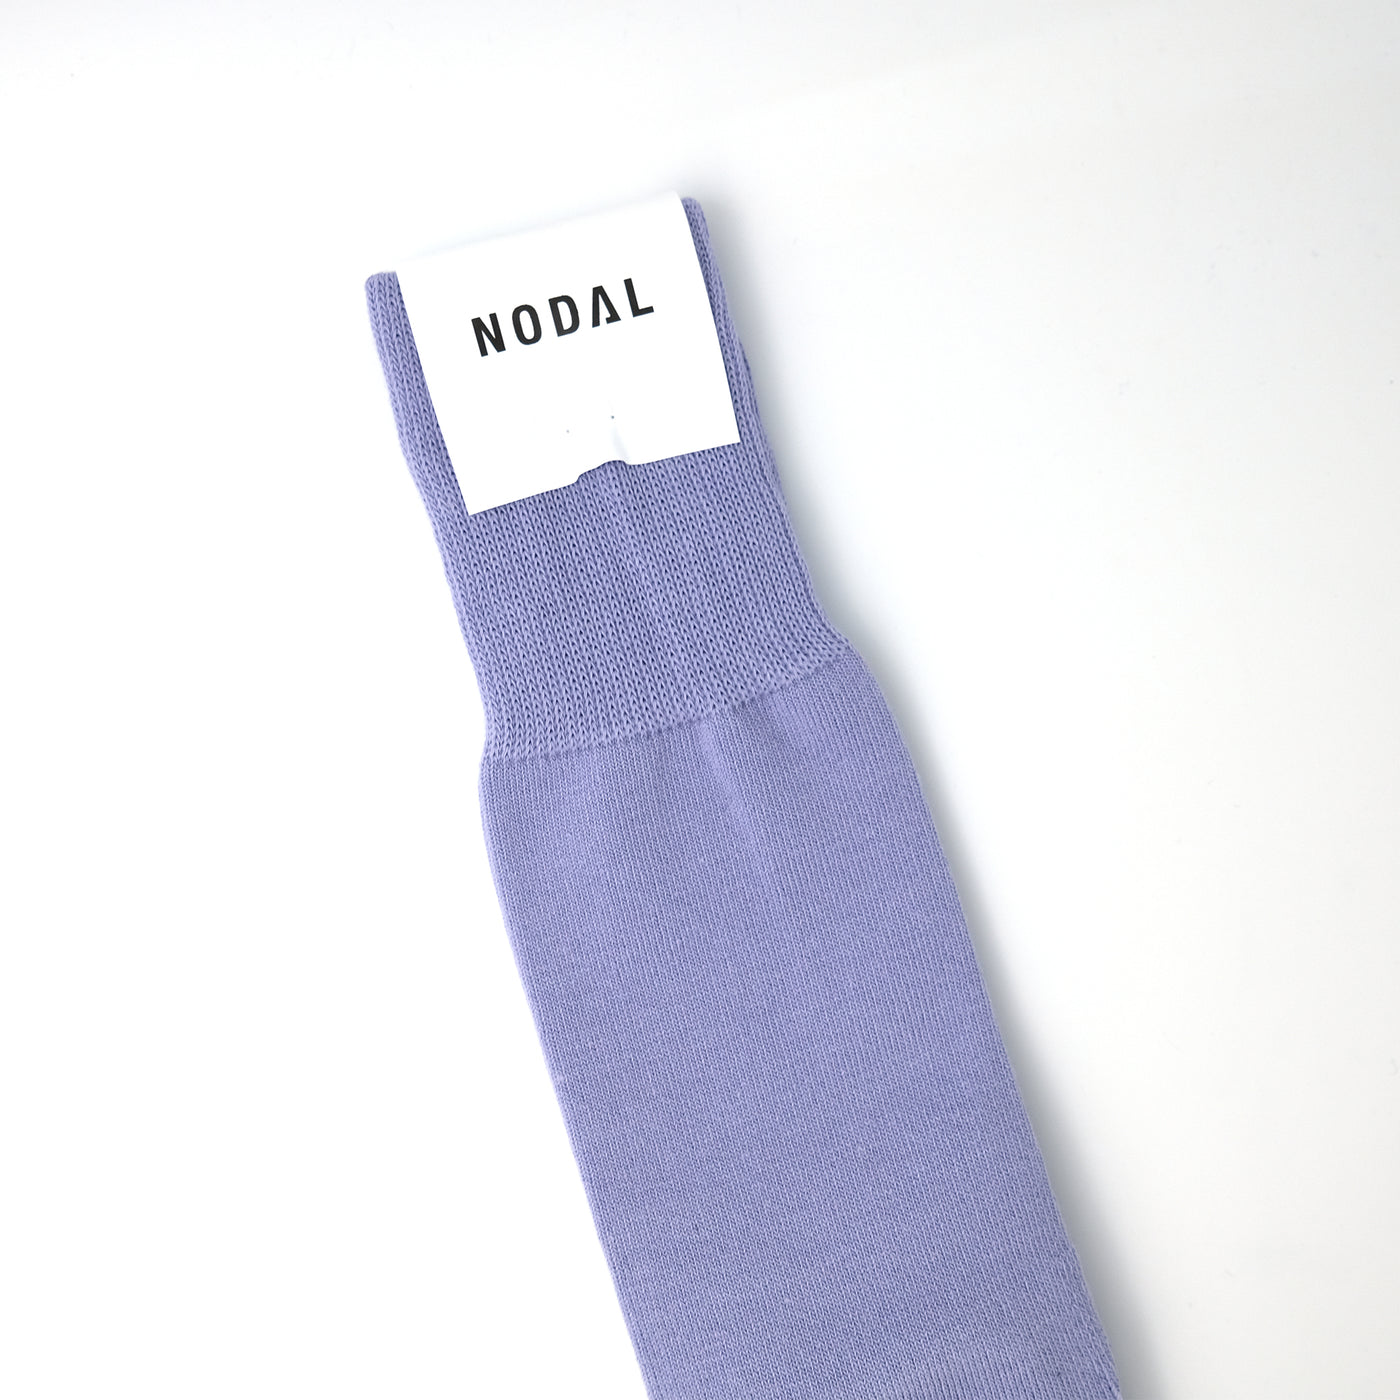 New Standard Socks PURPLE